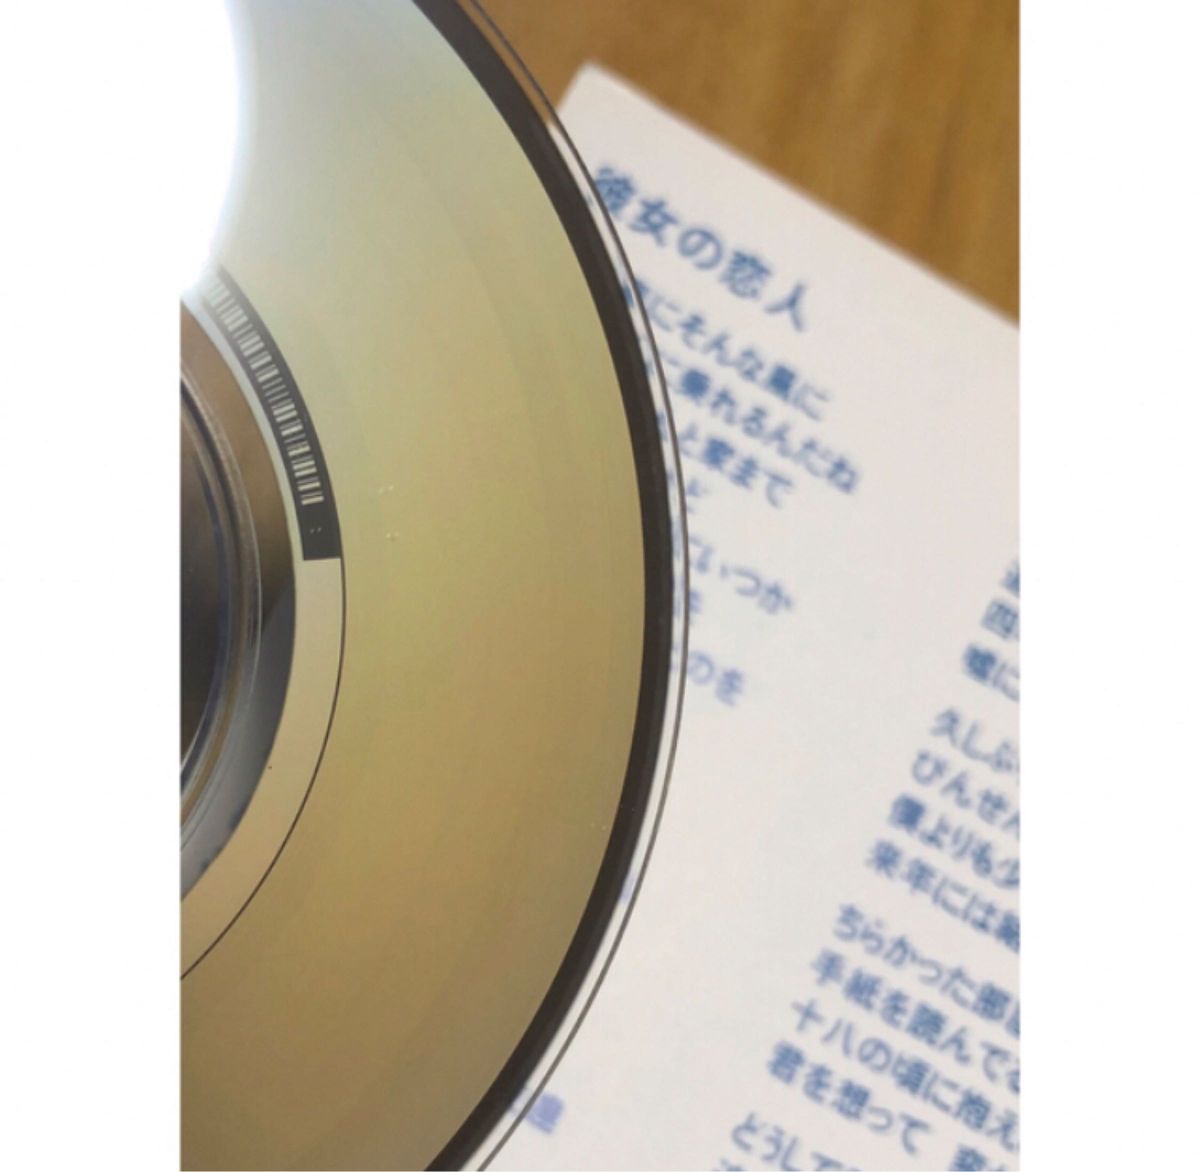 槇原敬之 シングルCD 8cm CD